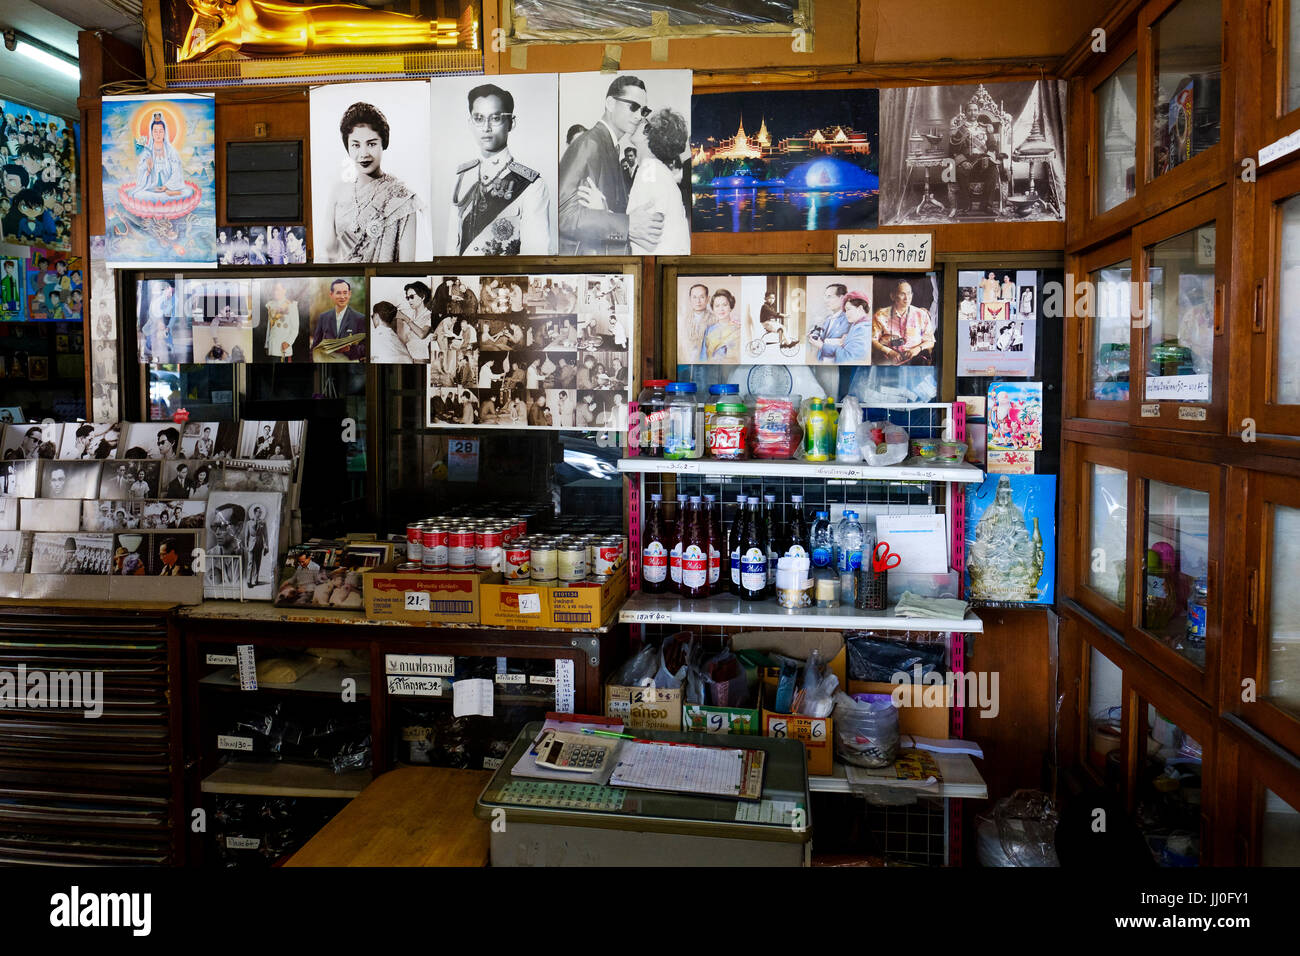 Una pequeña tienda de venta de algunos productos alimenticios junto con imágenes de la Familia Real de Tailandia, Distrito de Phra Nakhon, Bangkok, Tailandia. Foto de stock